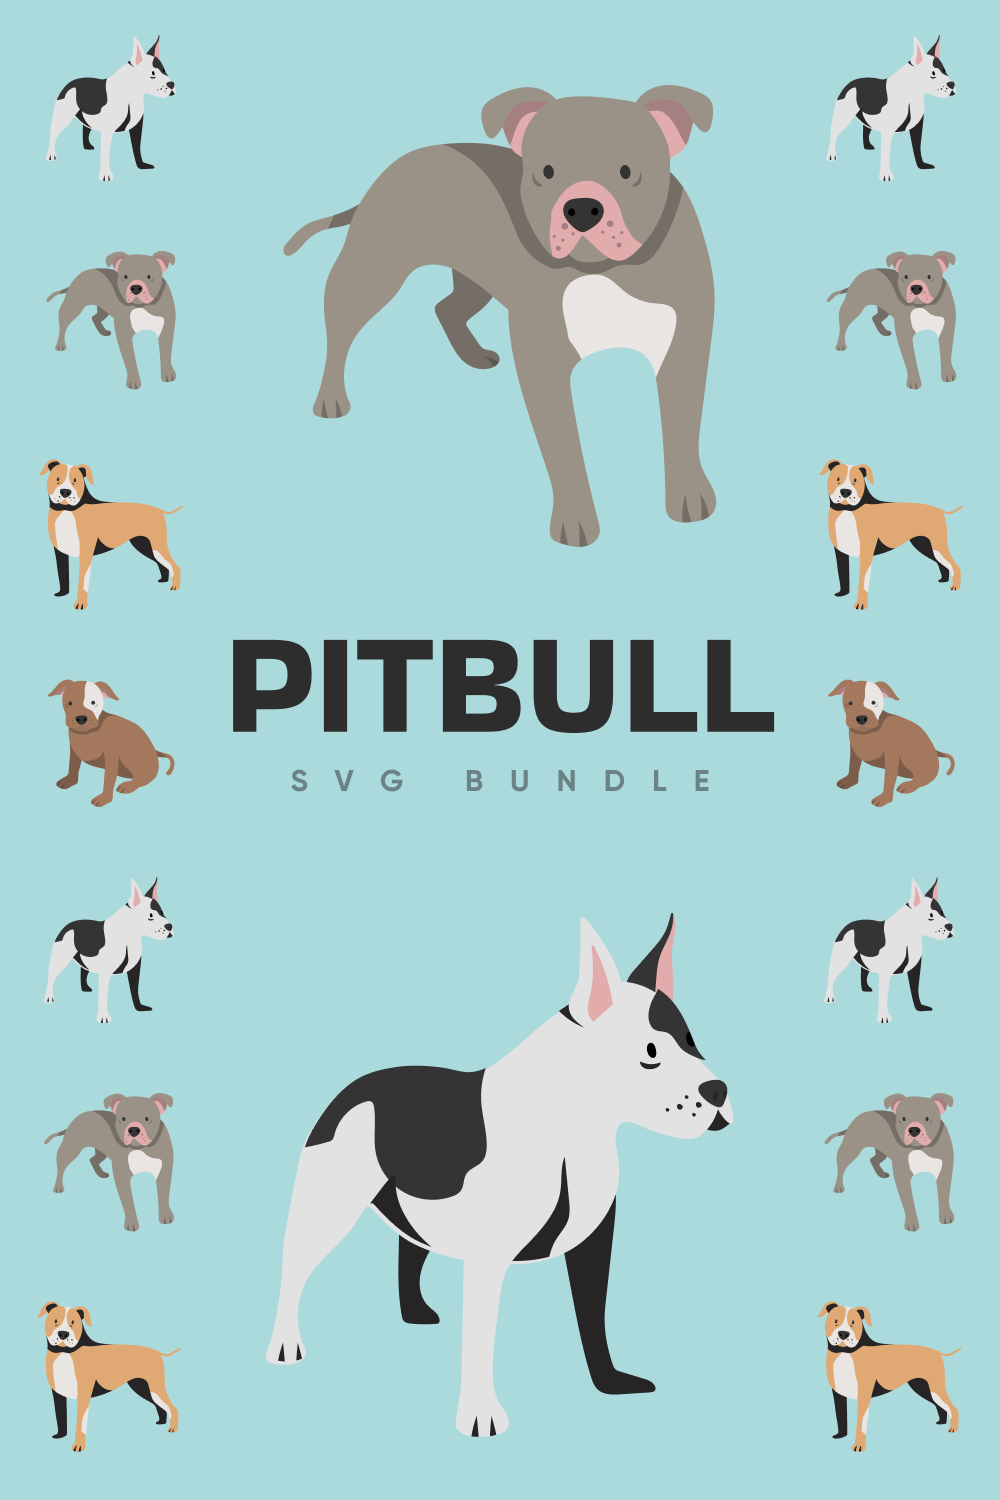 Pitbull SVG bundle pitbull.